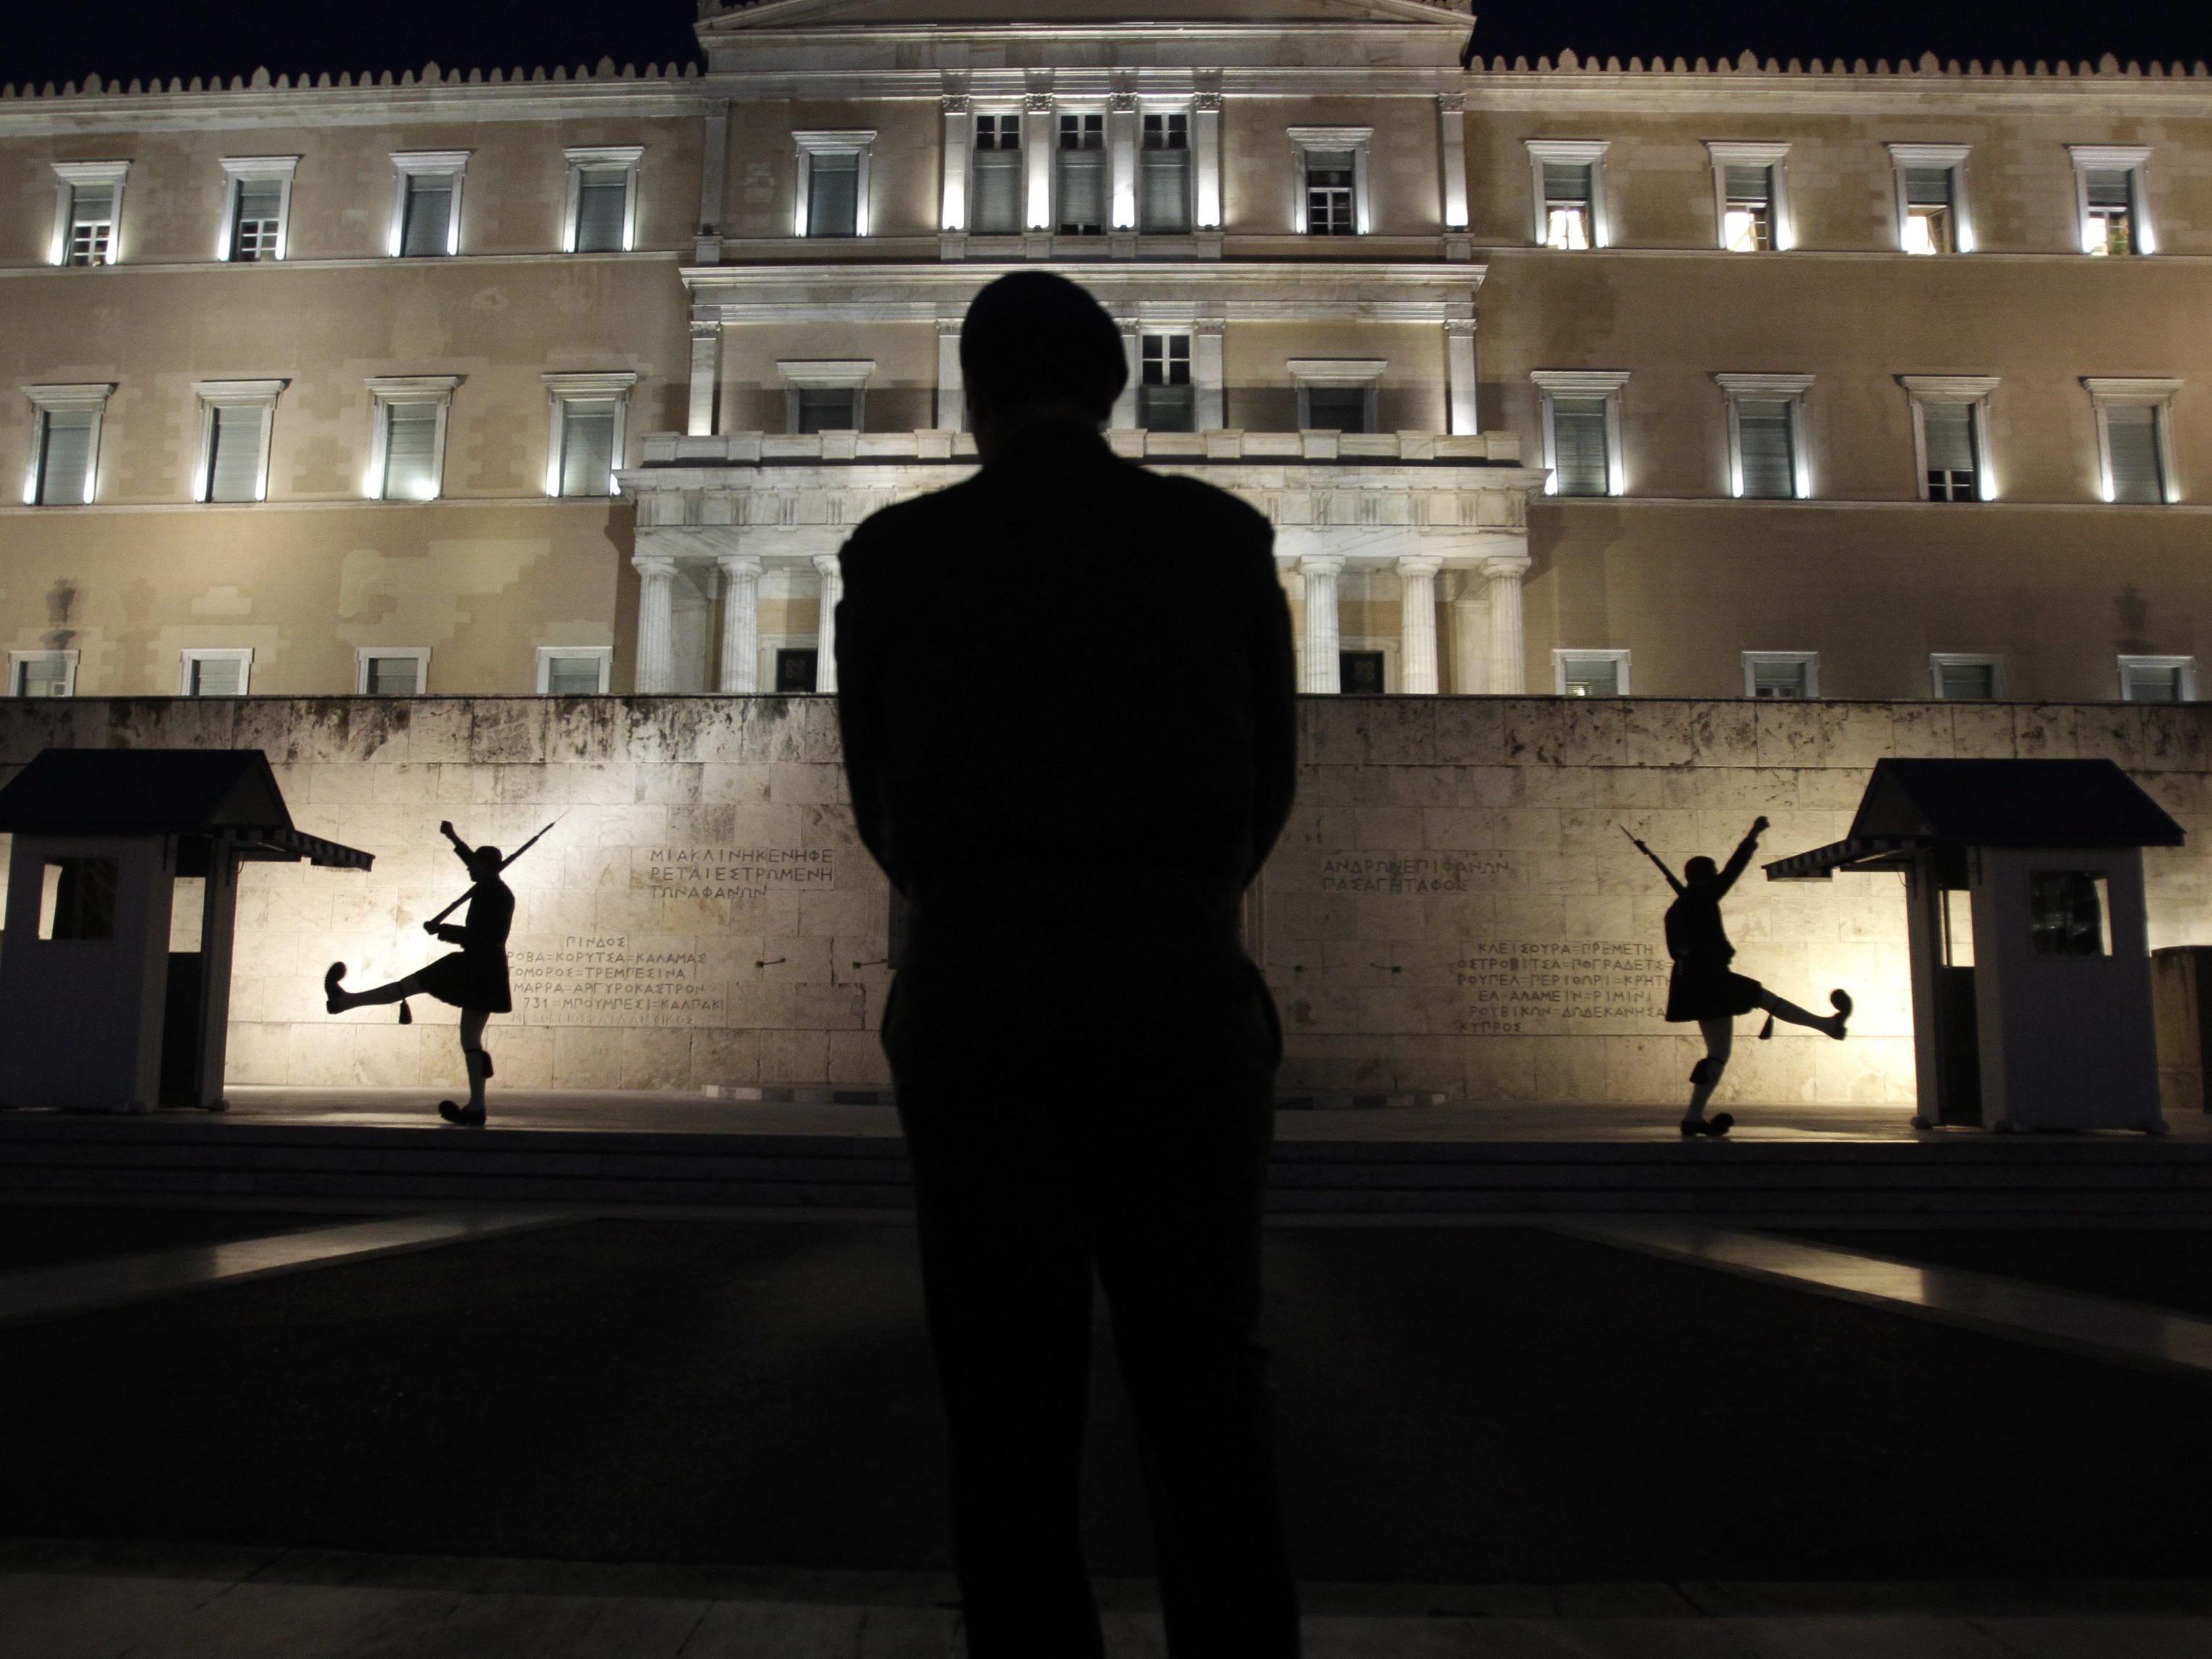 Griechische Reformliste bereits an Institutionen verschickt